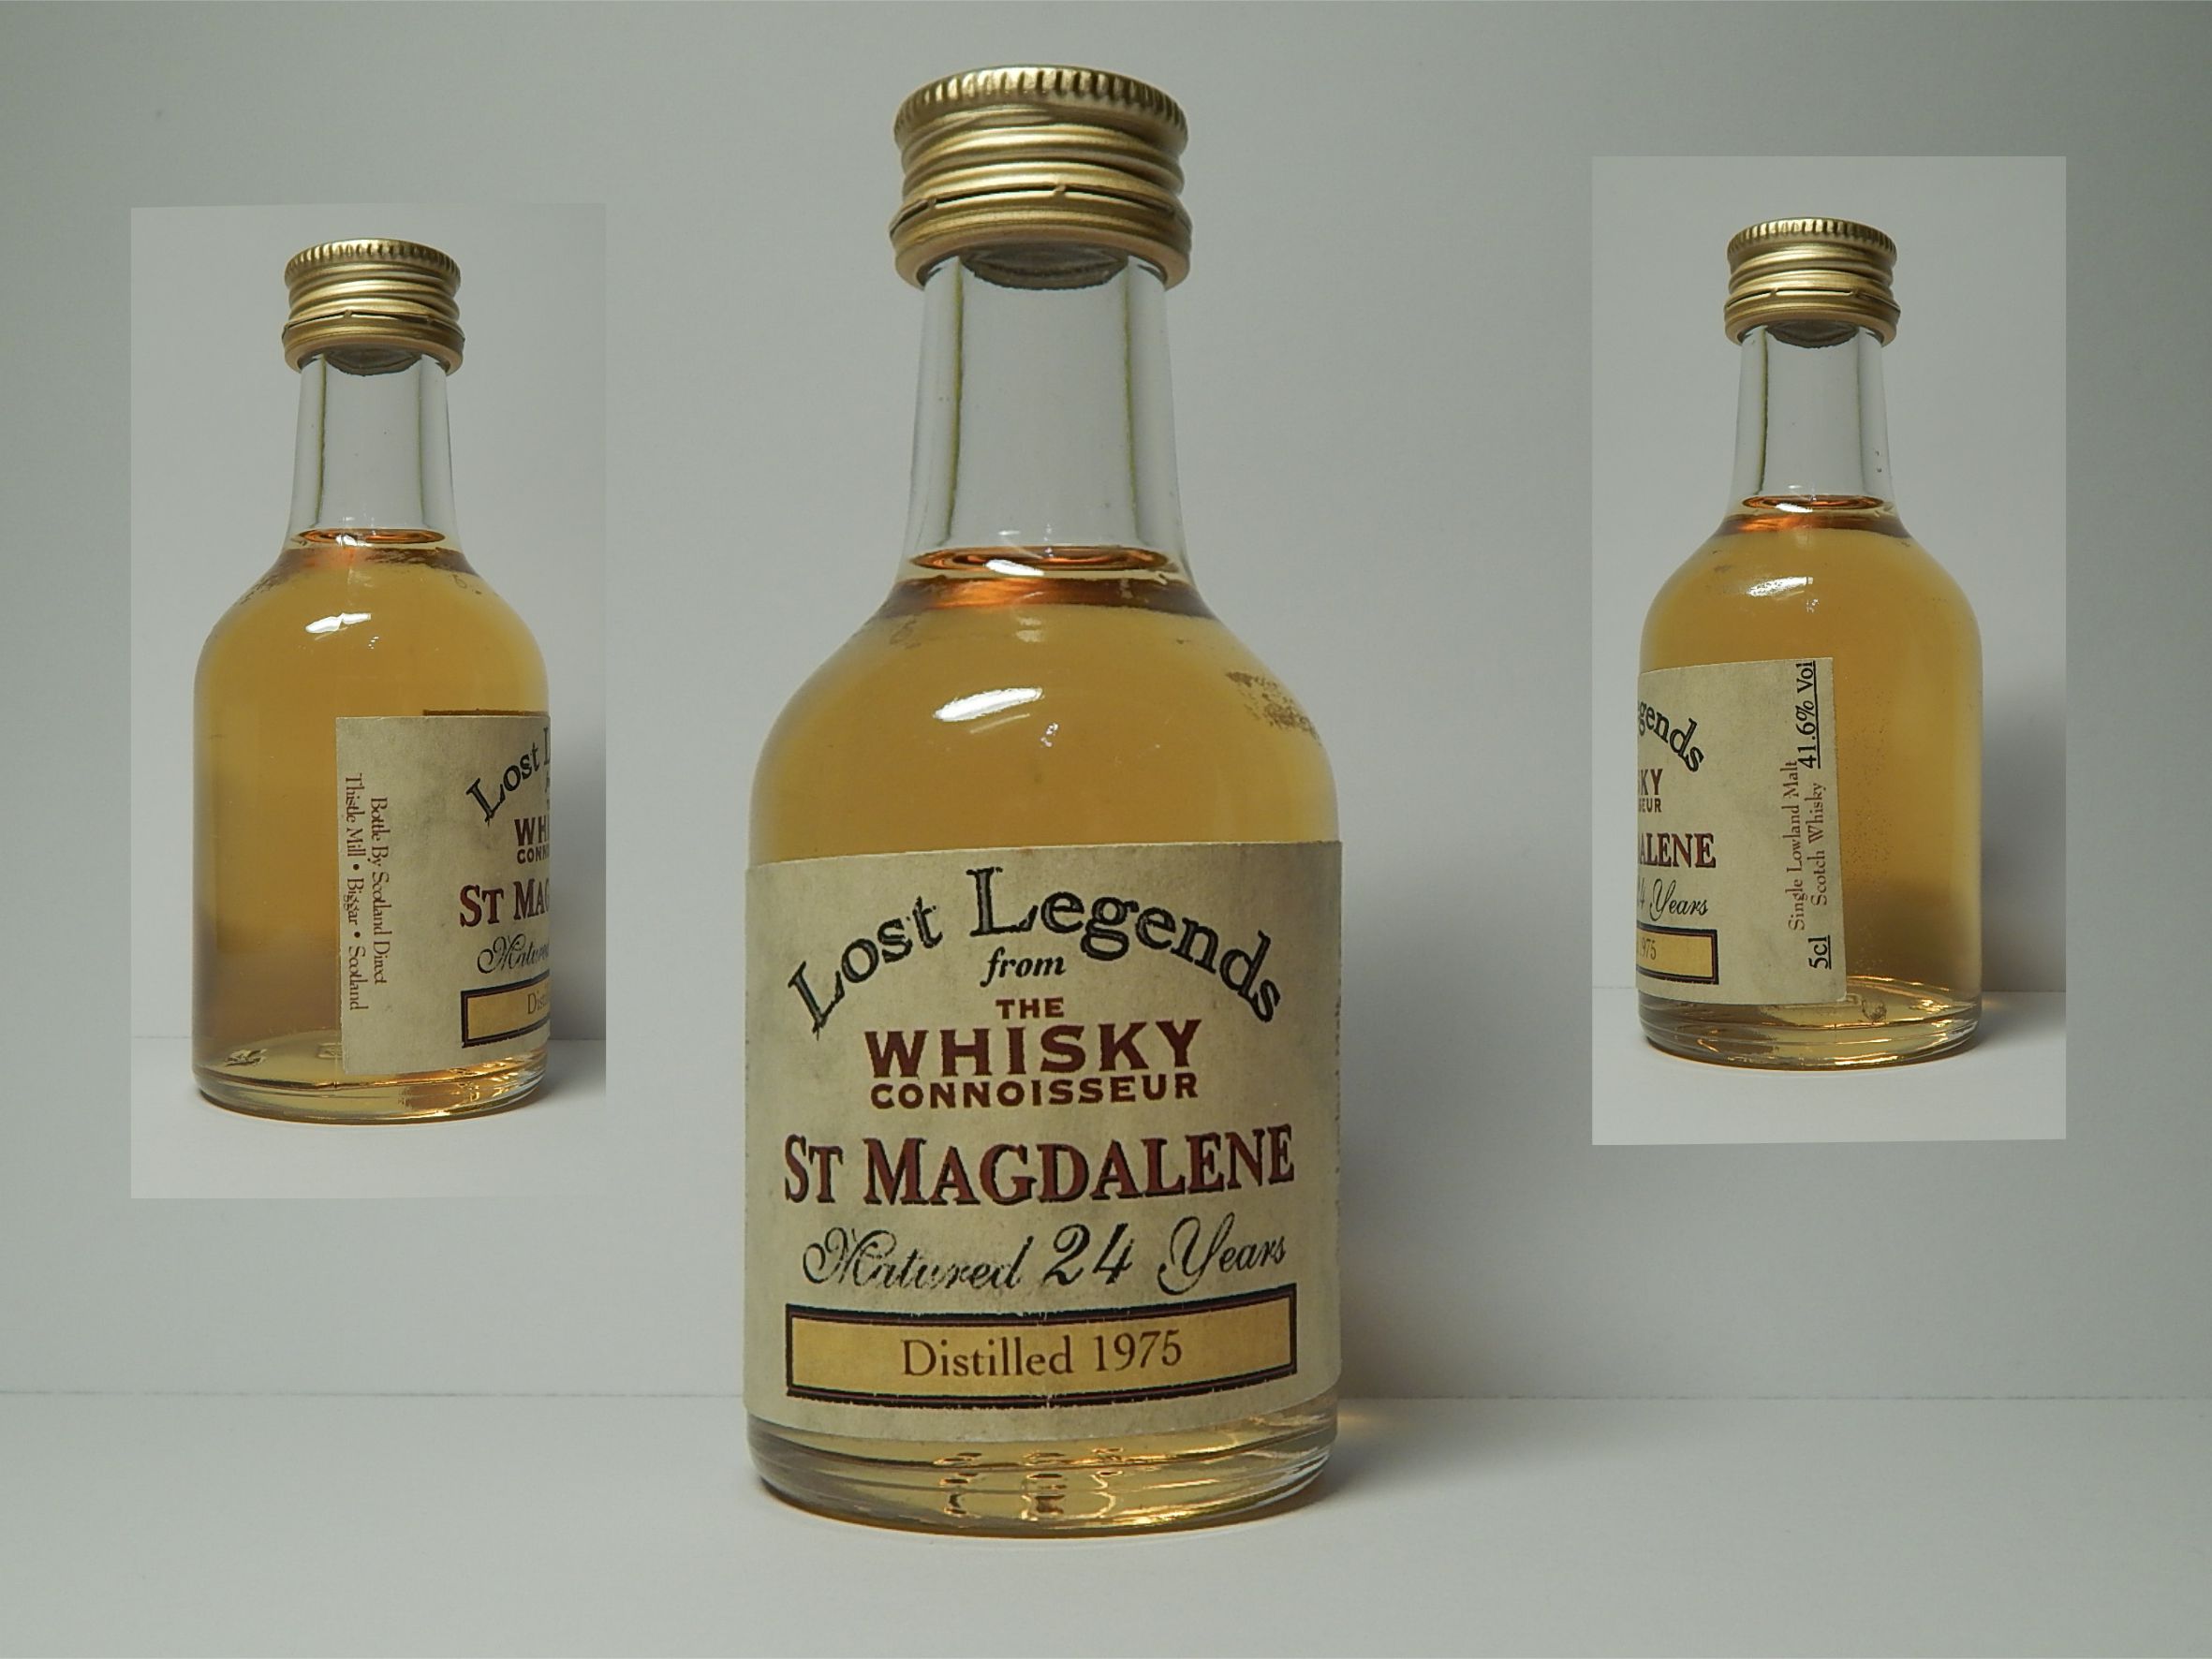 SLMSW 24yo 1975 "Whisky Connoisseur Lost Legends" 5cl 41,6%Vol